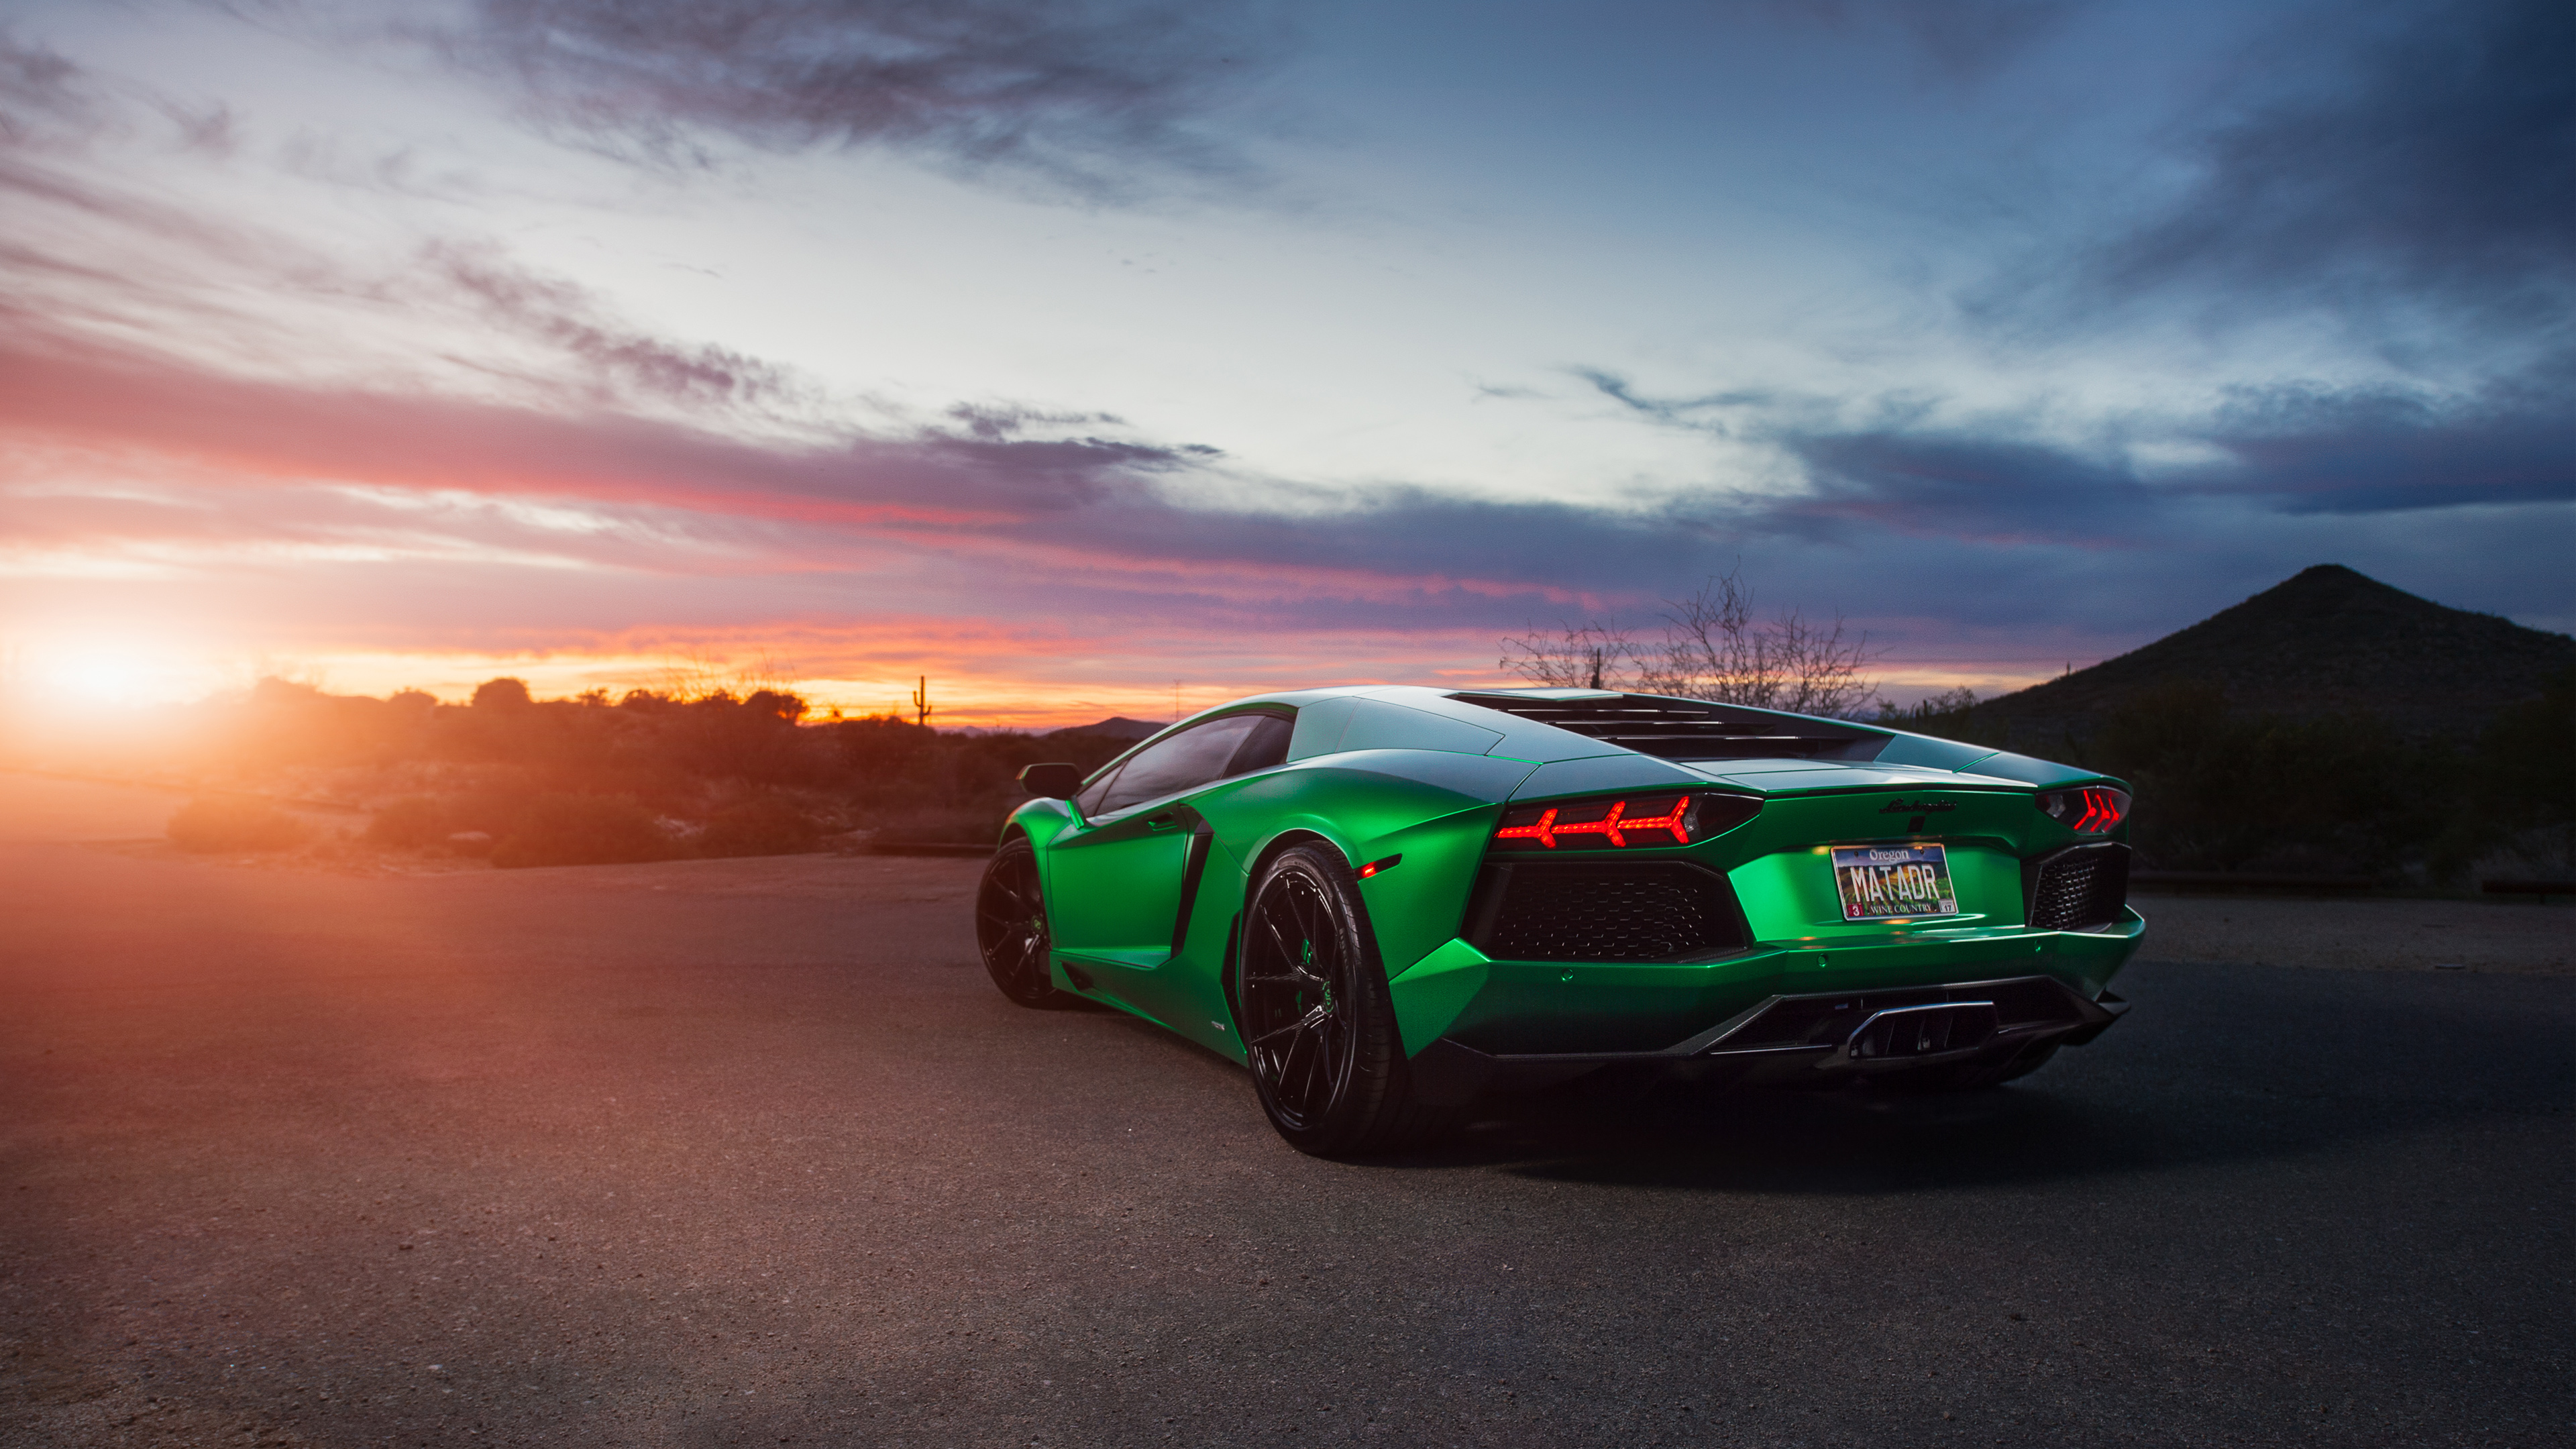 Lamborghini Aventador Green 4K Wallpaper | HD Car ...